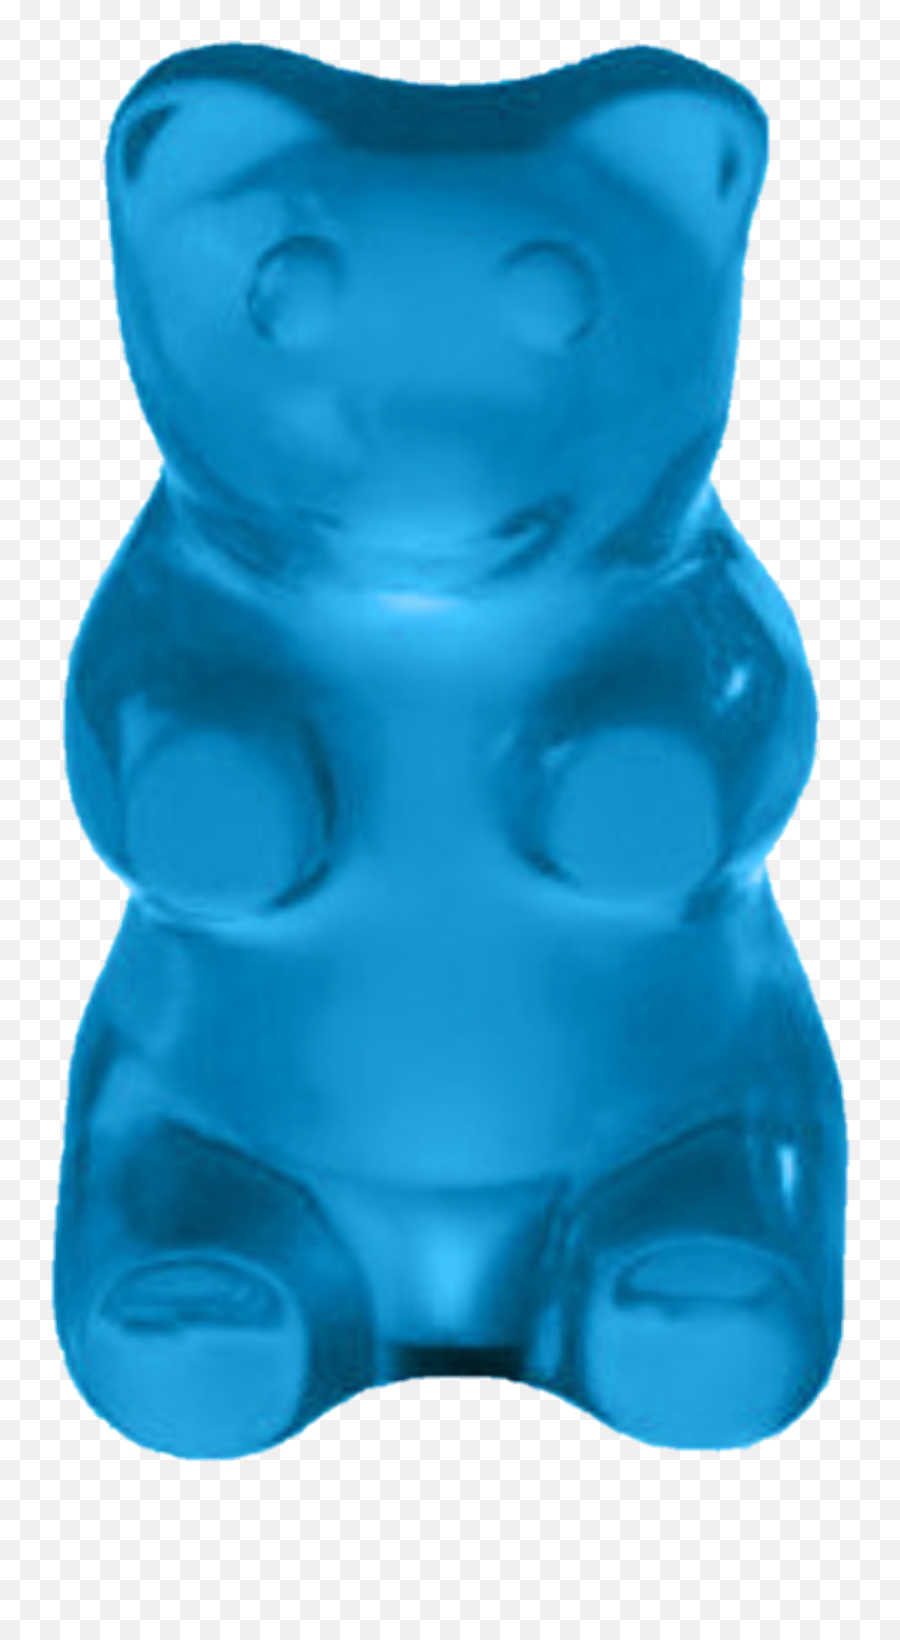 The Most Edited - Baby Blue Gummy Bear Emoji,Gummy Bear Emoji